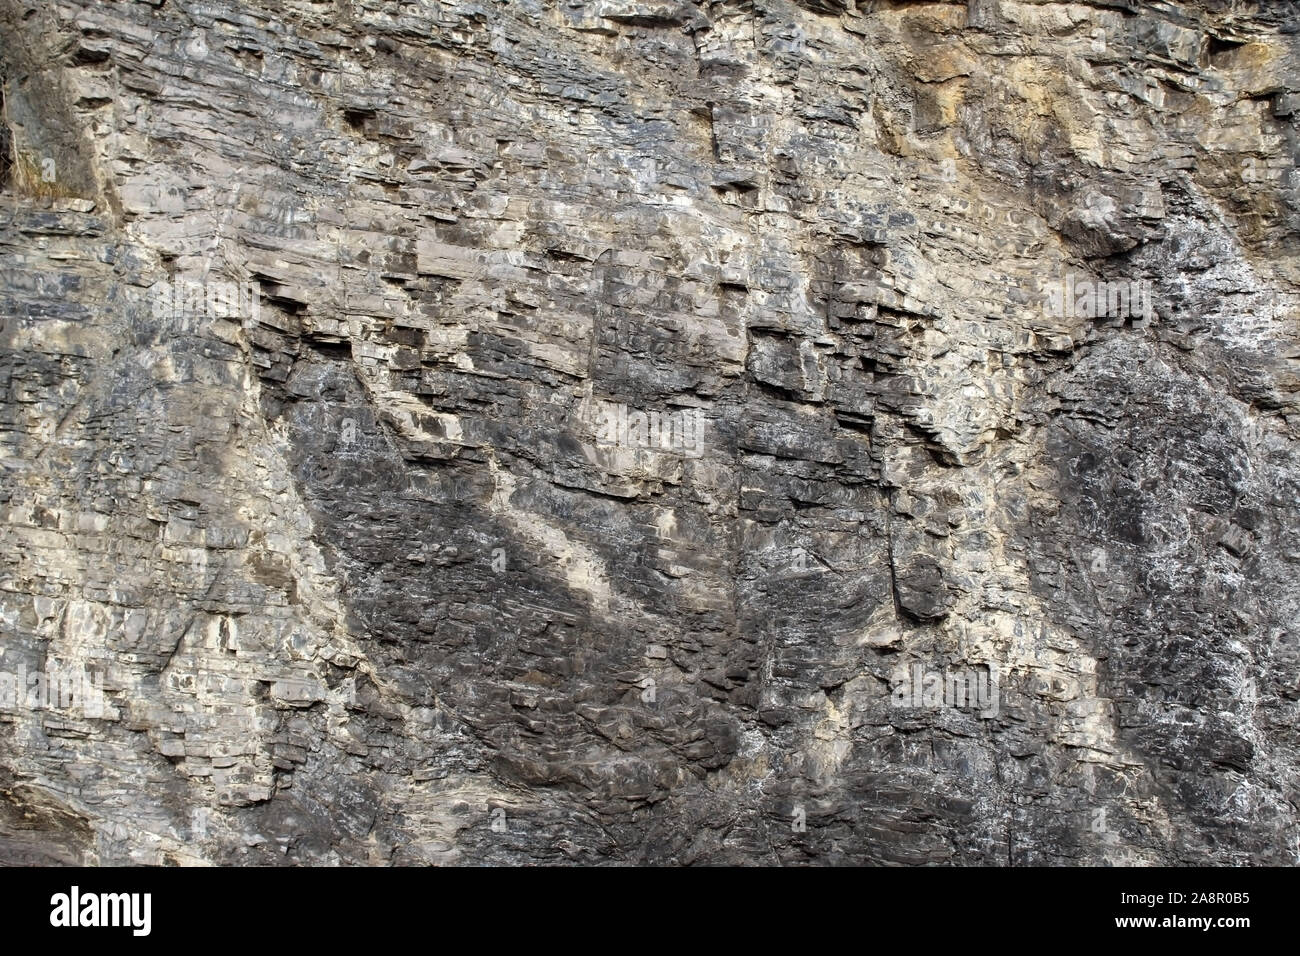 Sedimentäre Karbonatfelsen Schichten im Detail gesehen Stockfoto